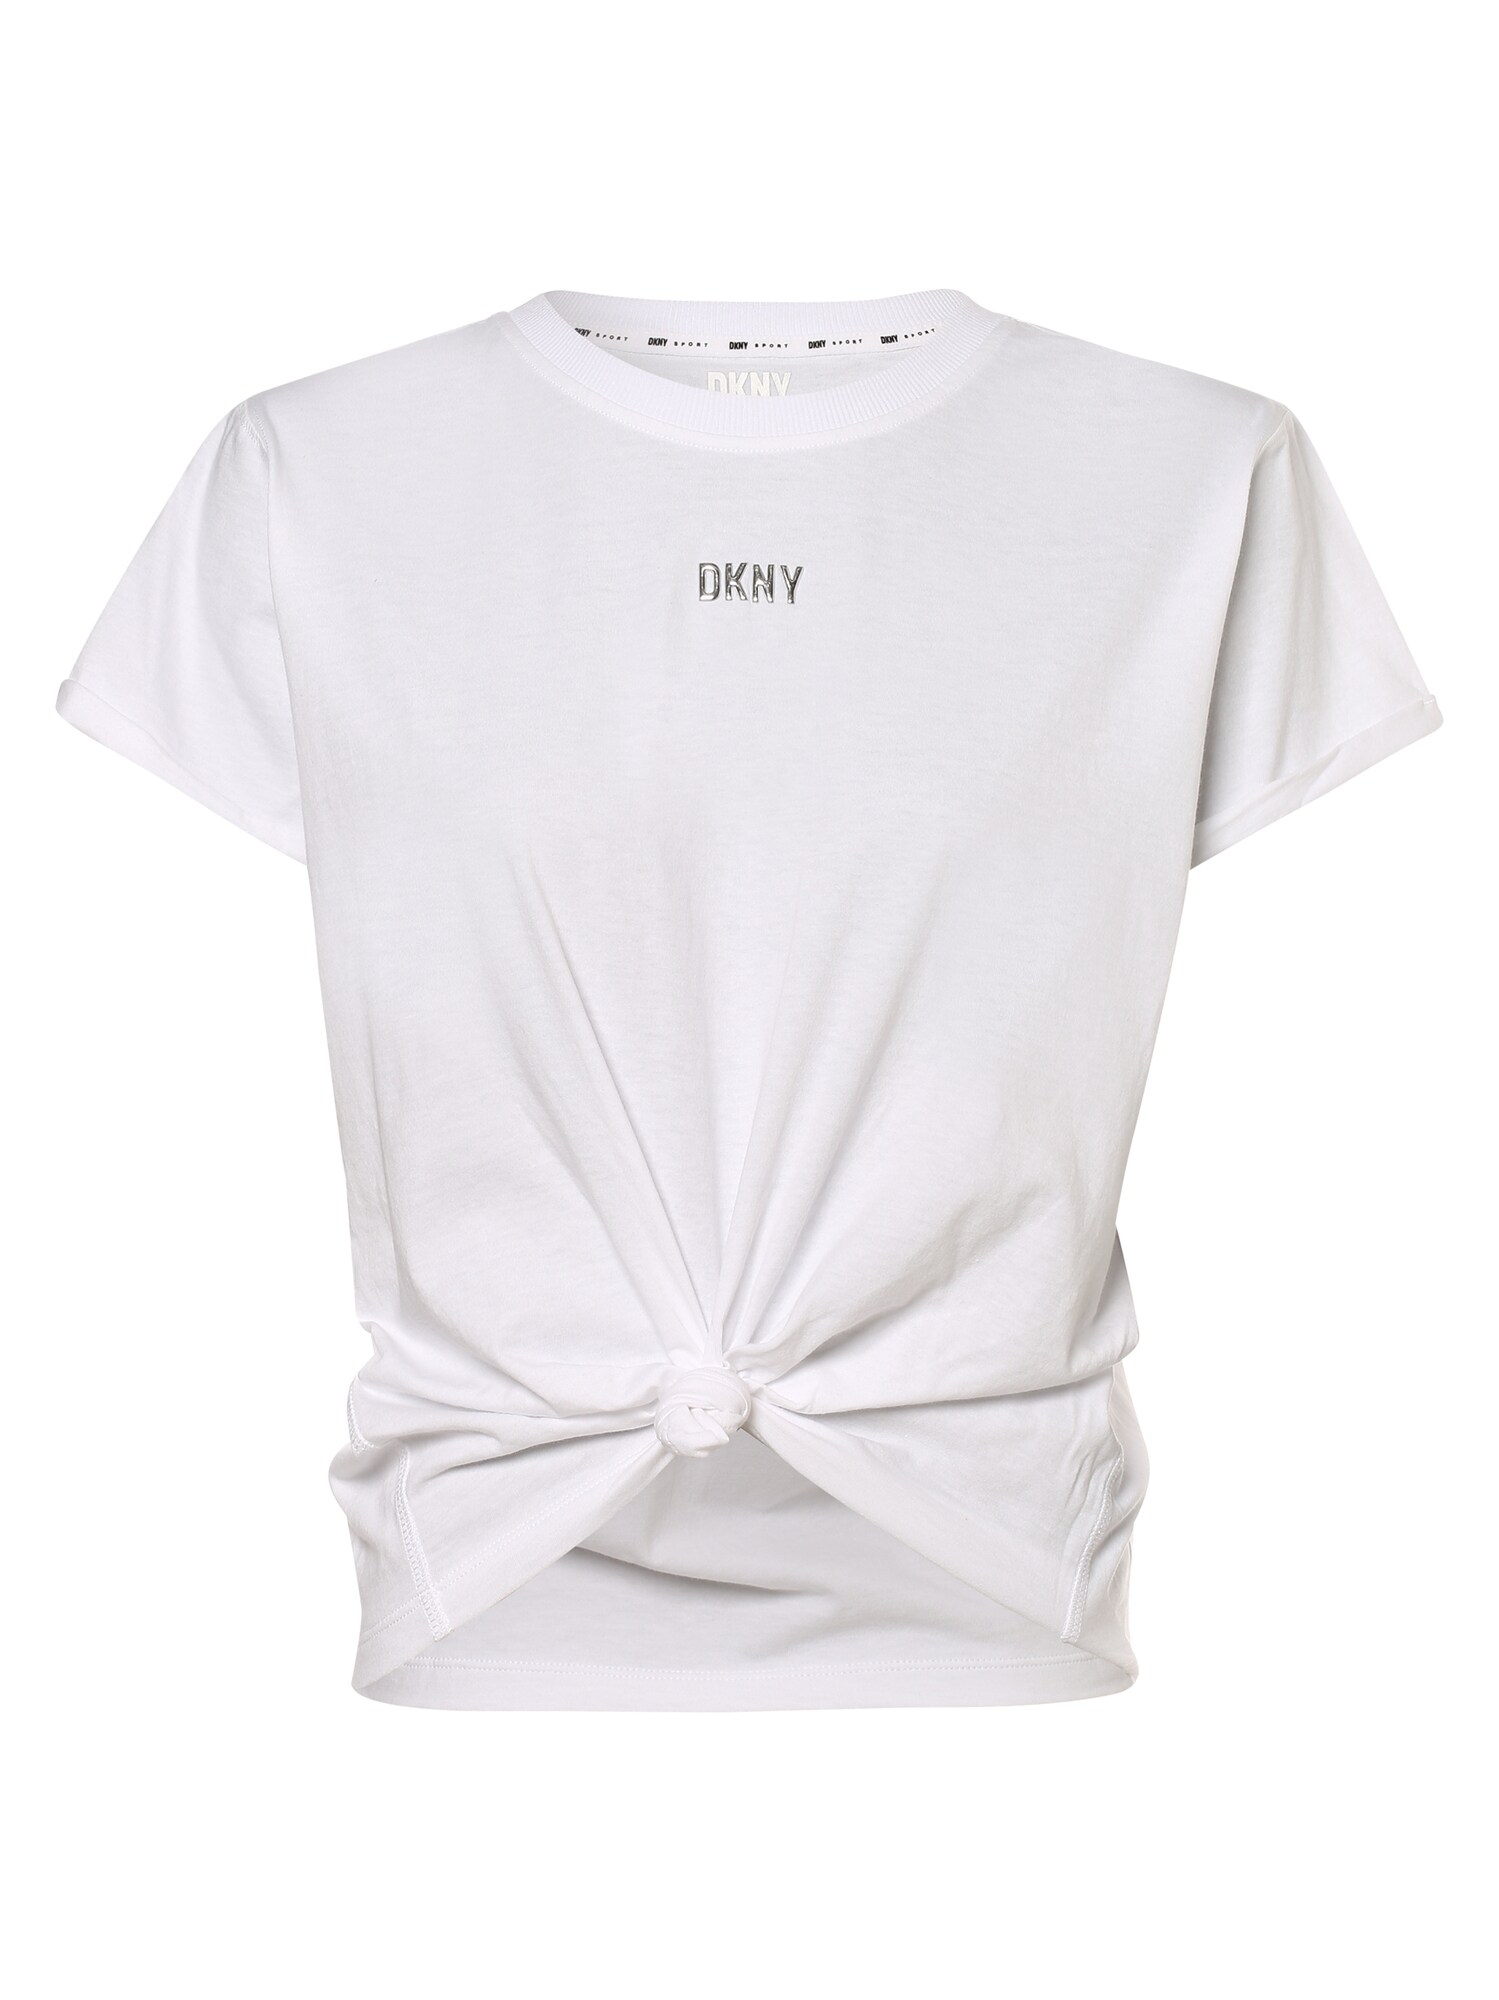 DKNY Shirt wei